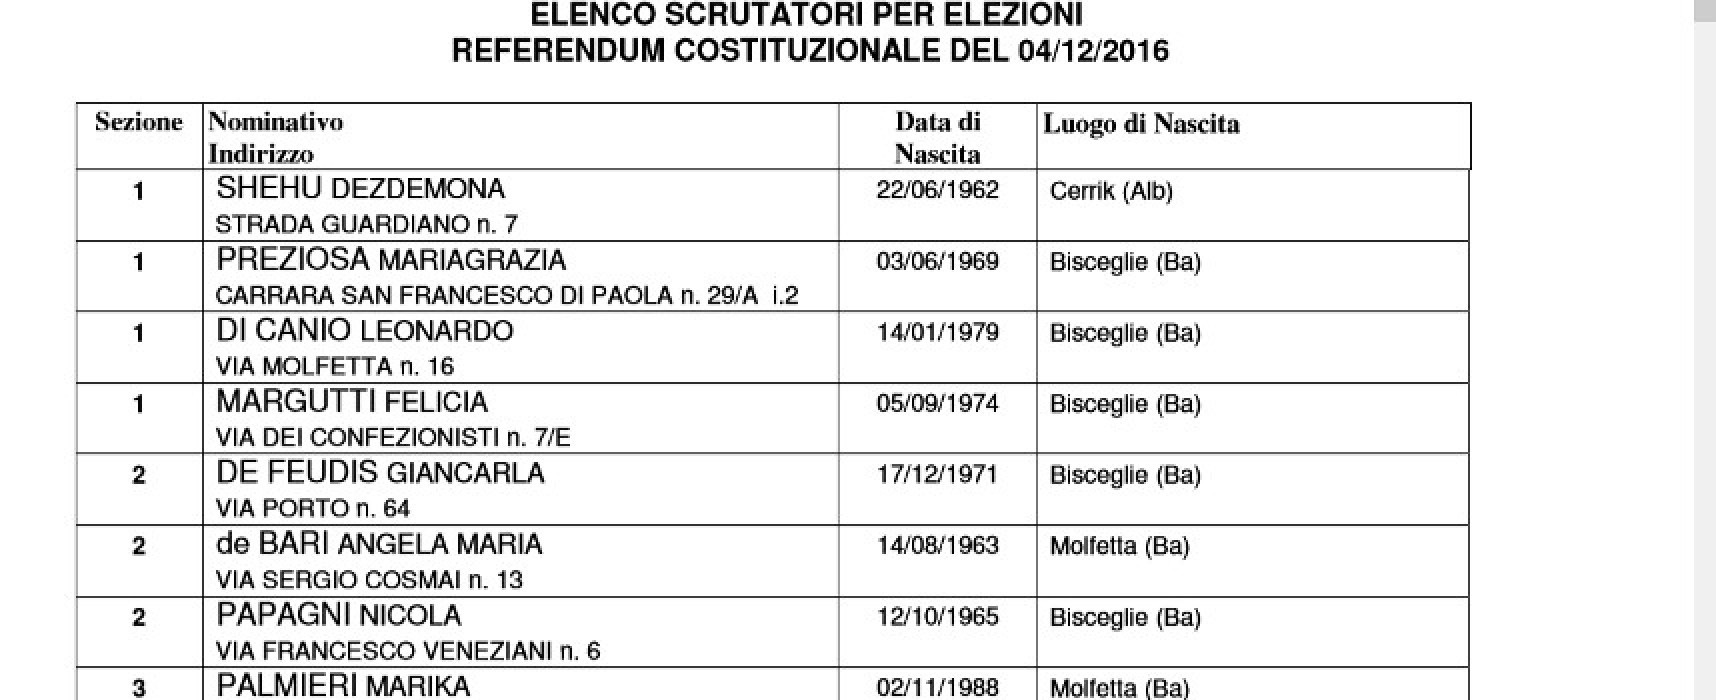 Referendum costituzionale 4 dicembre, ecco gli scrutatori sorteggiati / ELENCO